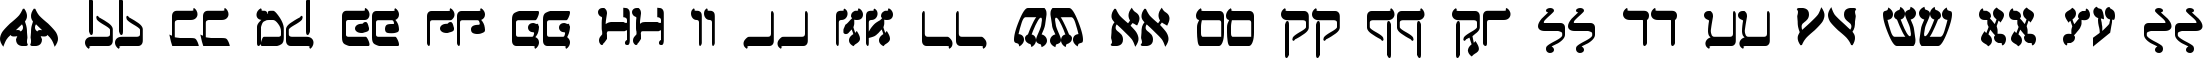 Пример написания английского алфавита шрифтом Jerusalem Bold